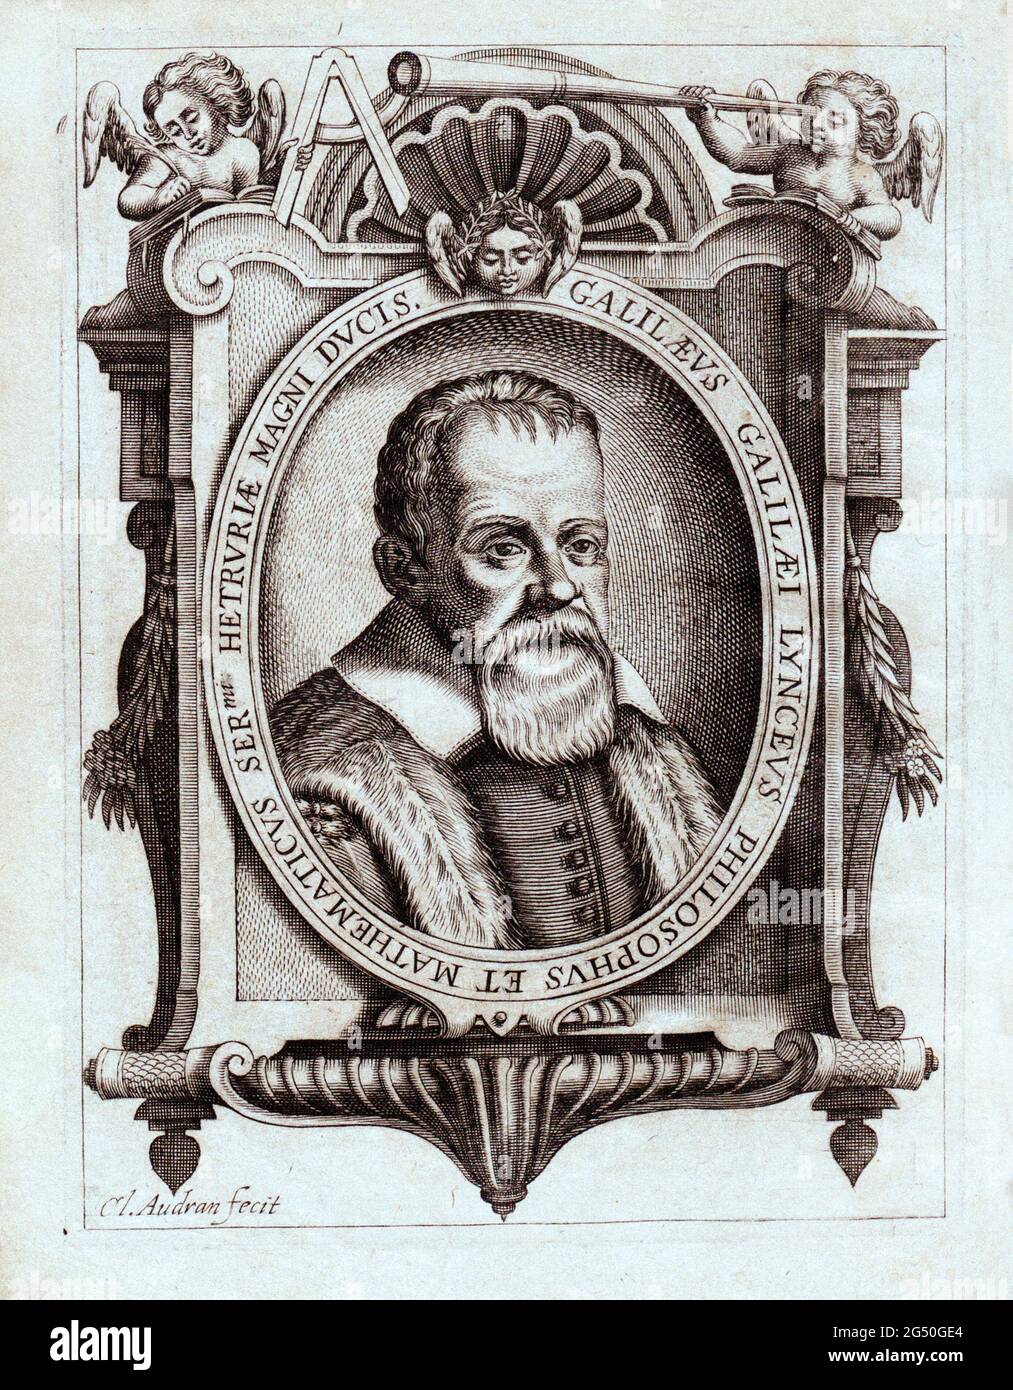 Gravure du portrait de Galileo Galilei. 1641 Galileo di Vincenzo Bonaiuti de' Galilei (1564 – 1642) est un astronome, physicien et inné italien Banque D'Images